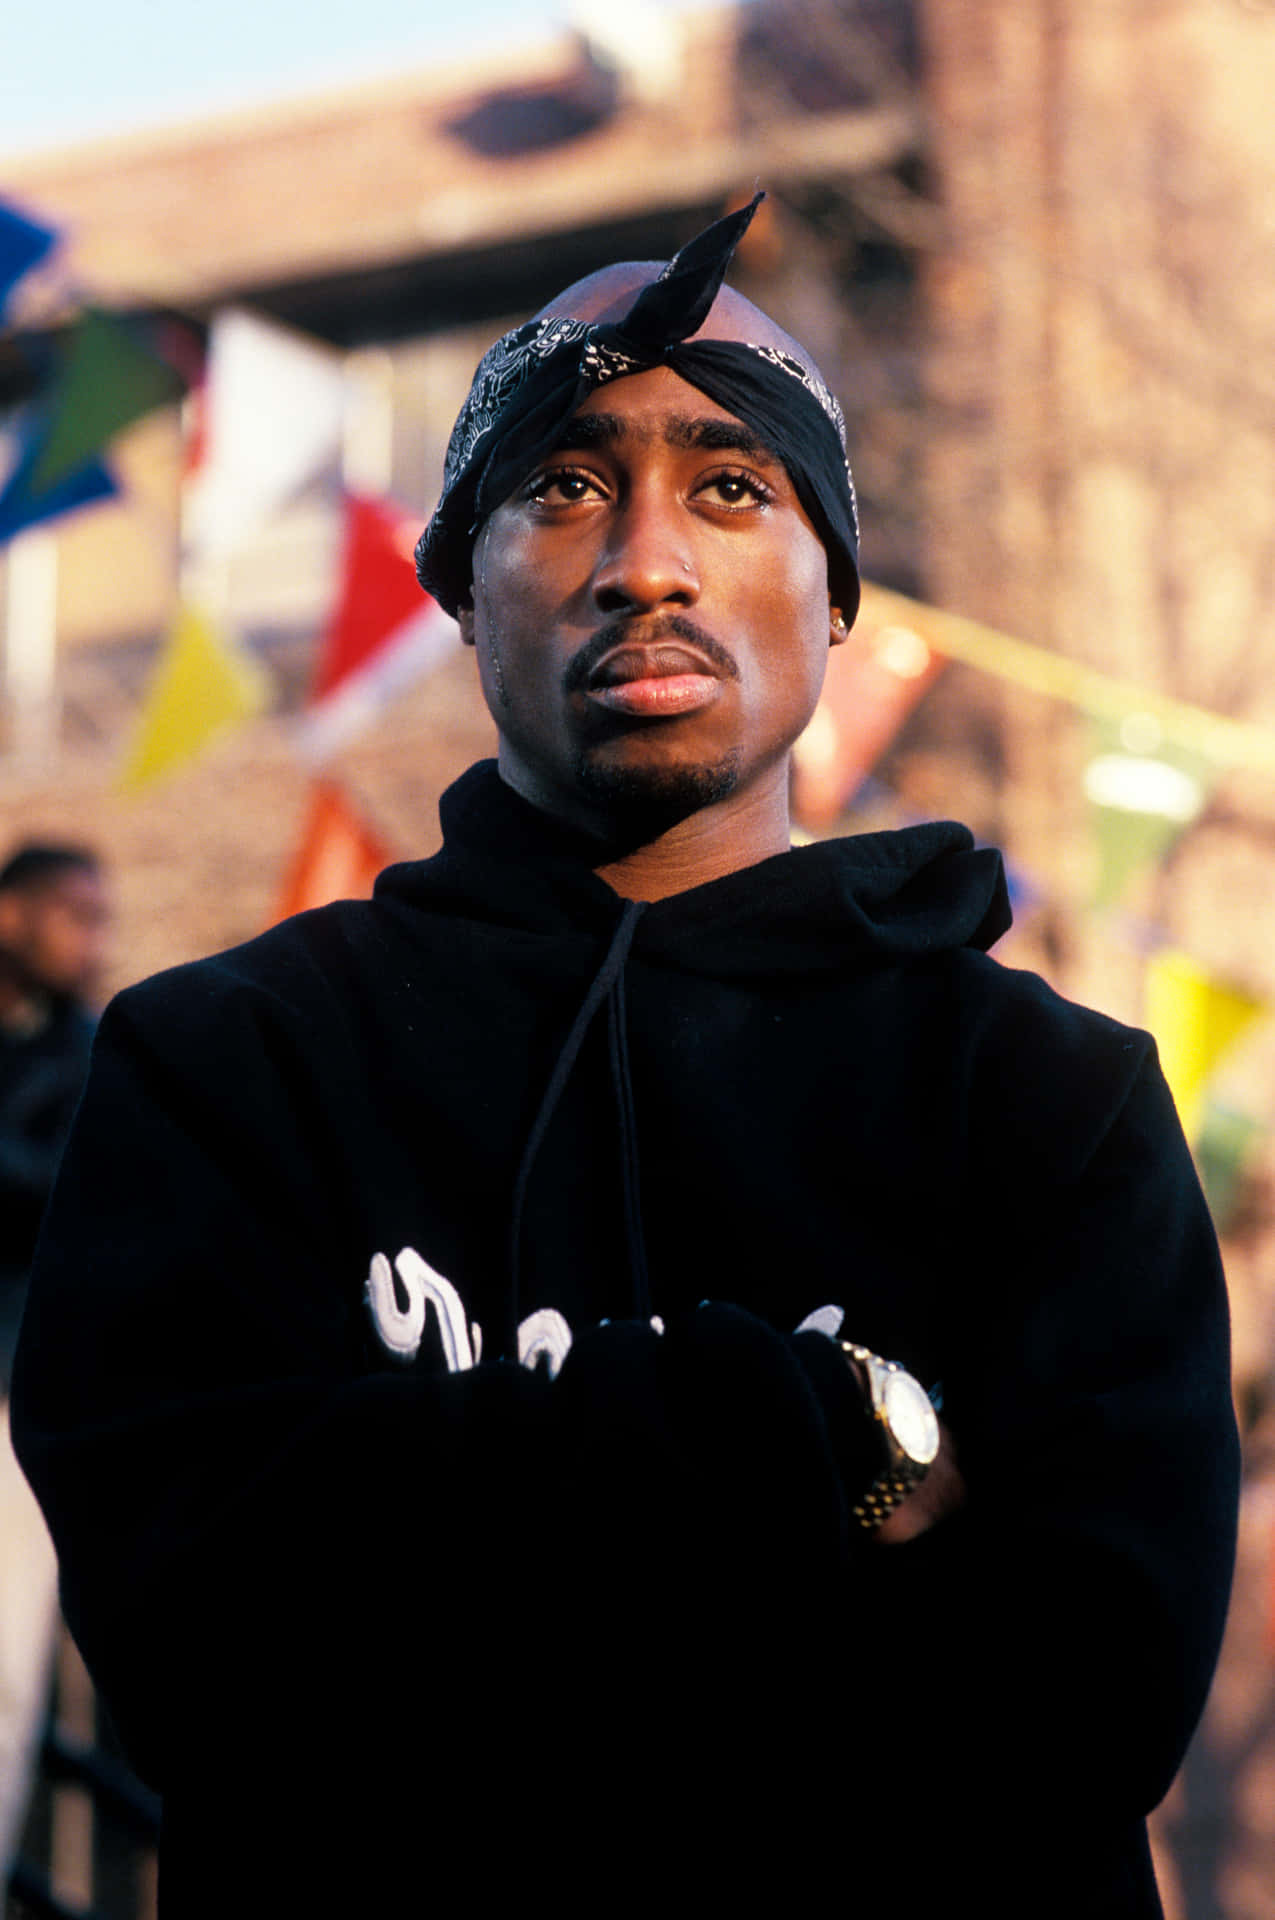 Descriçãouma Imagem Clássica Em Preto E Branco Do Lendário Ícone Do Hip-hop Tupac Shakur.